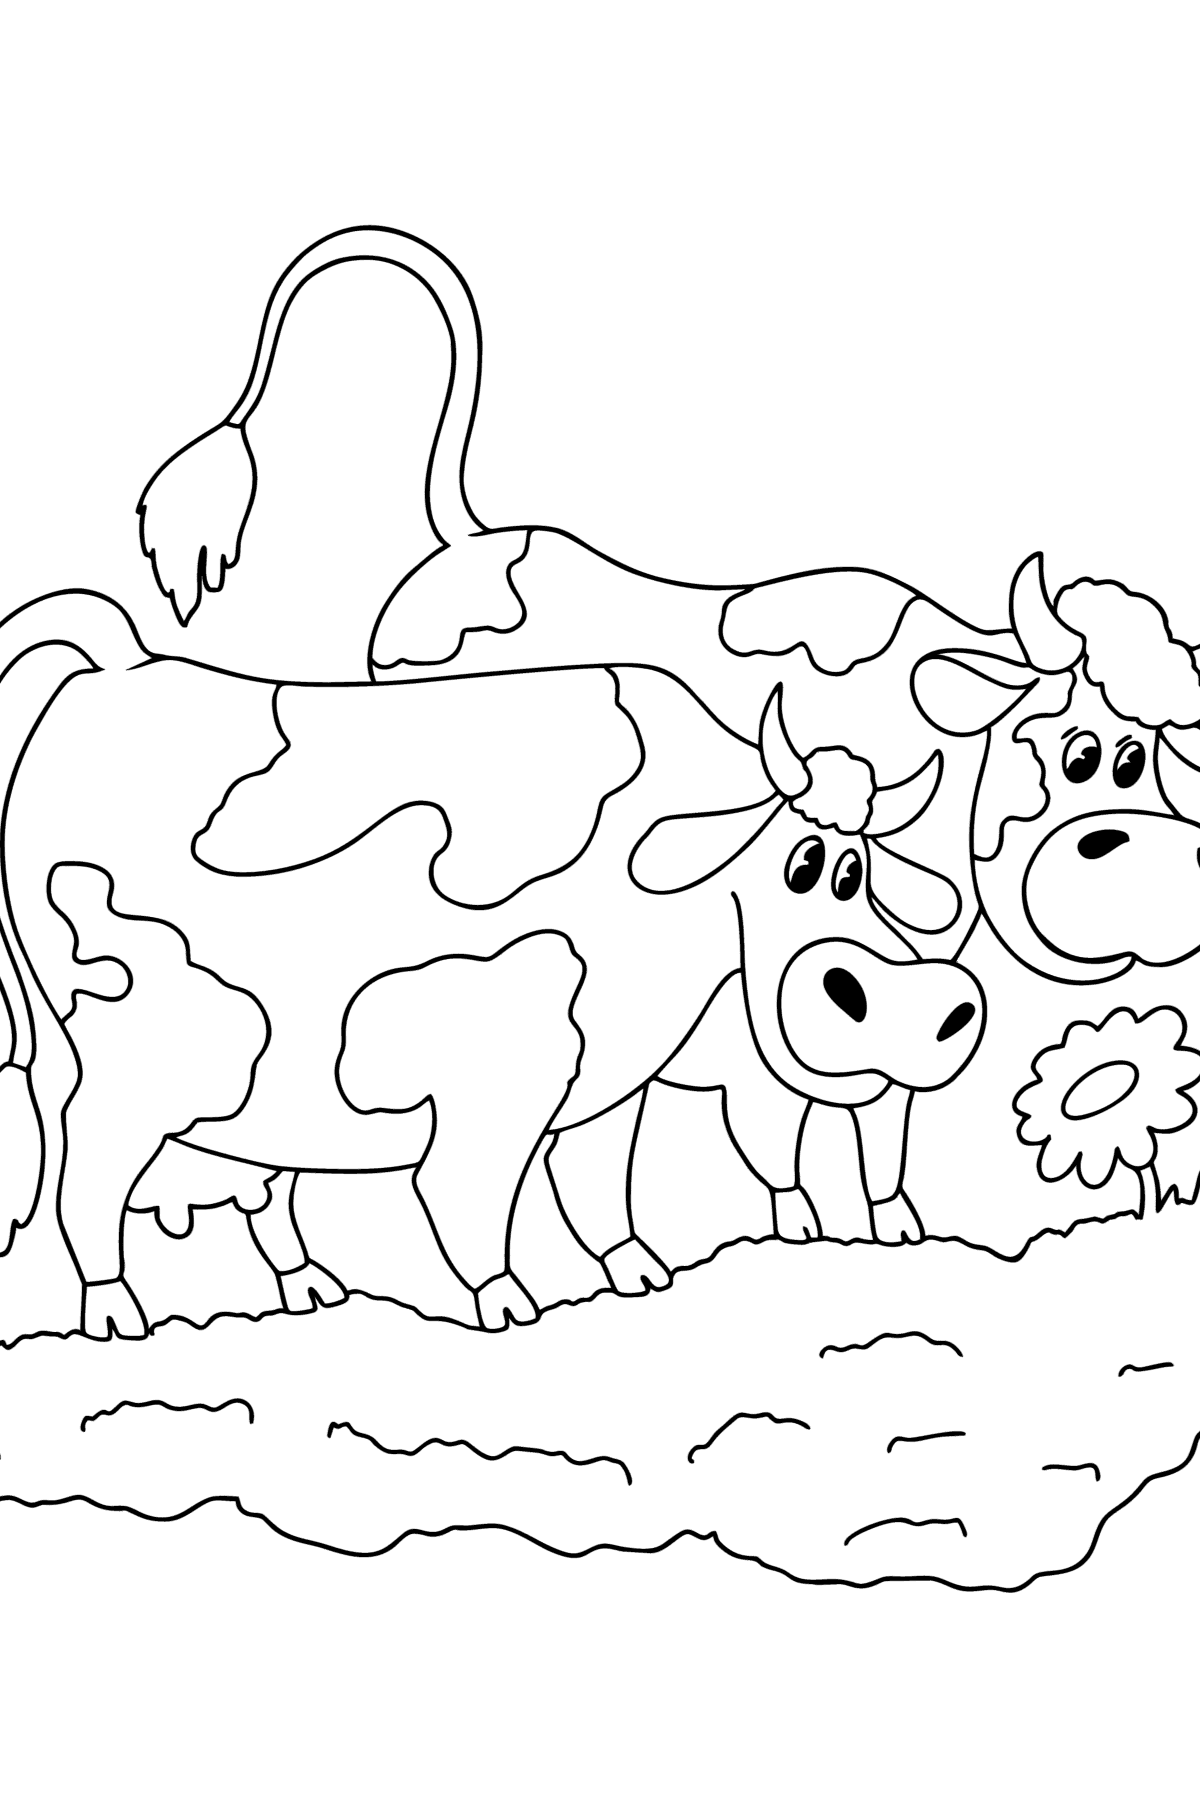 Tegning til fargelegging To kyr på enga - Tegninger til fargelegging for barn